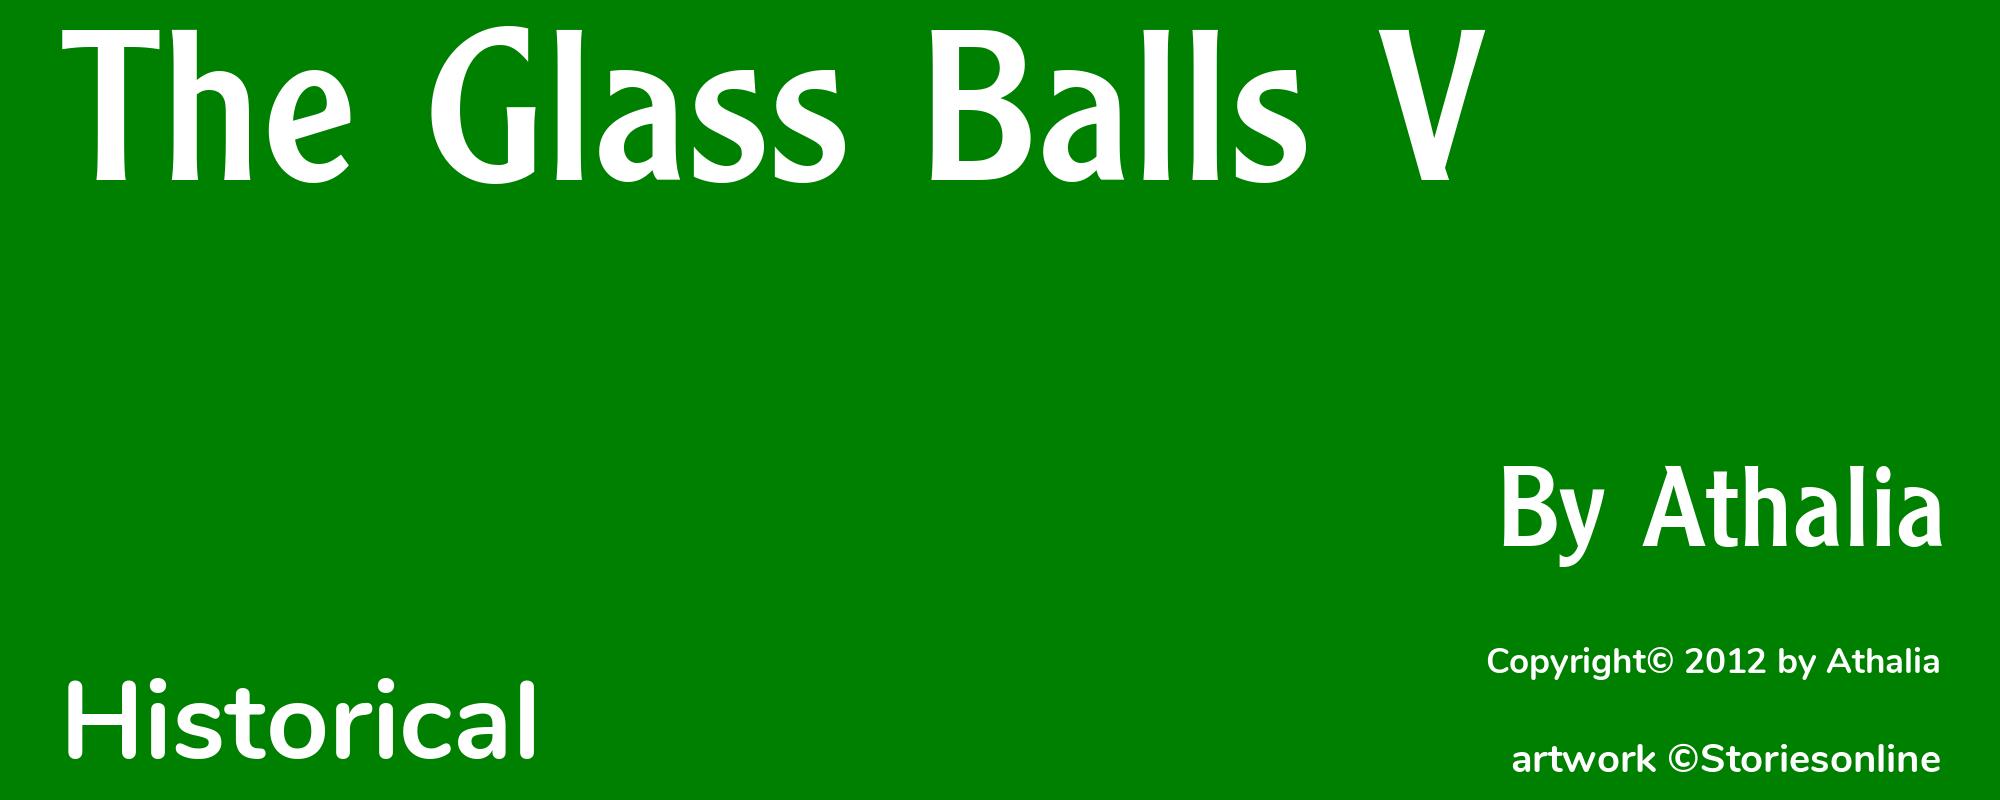 The Glass Balls V - Cover